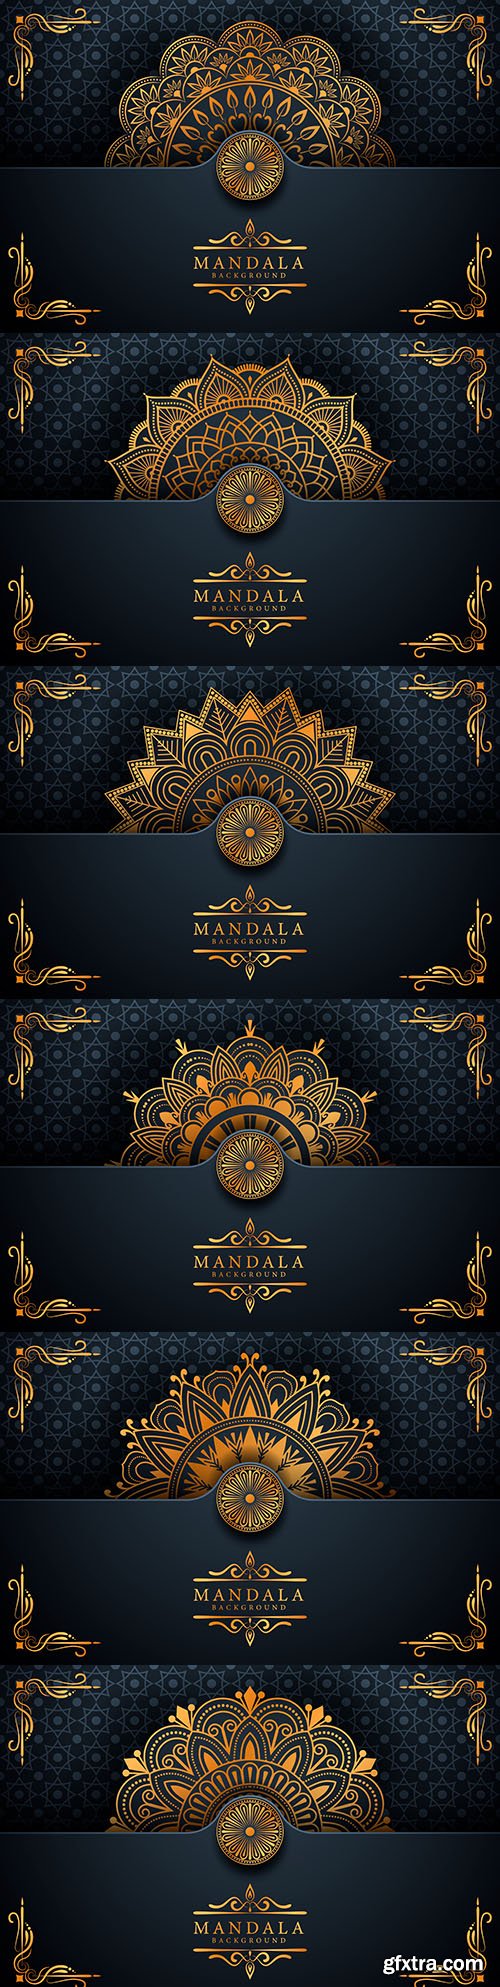 Mandala luxury elegant Ramadan style background